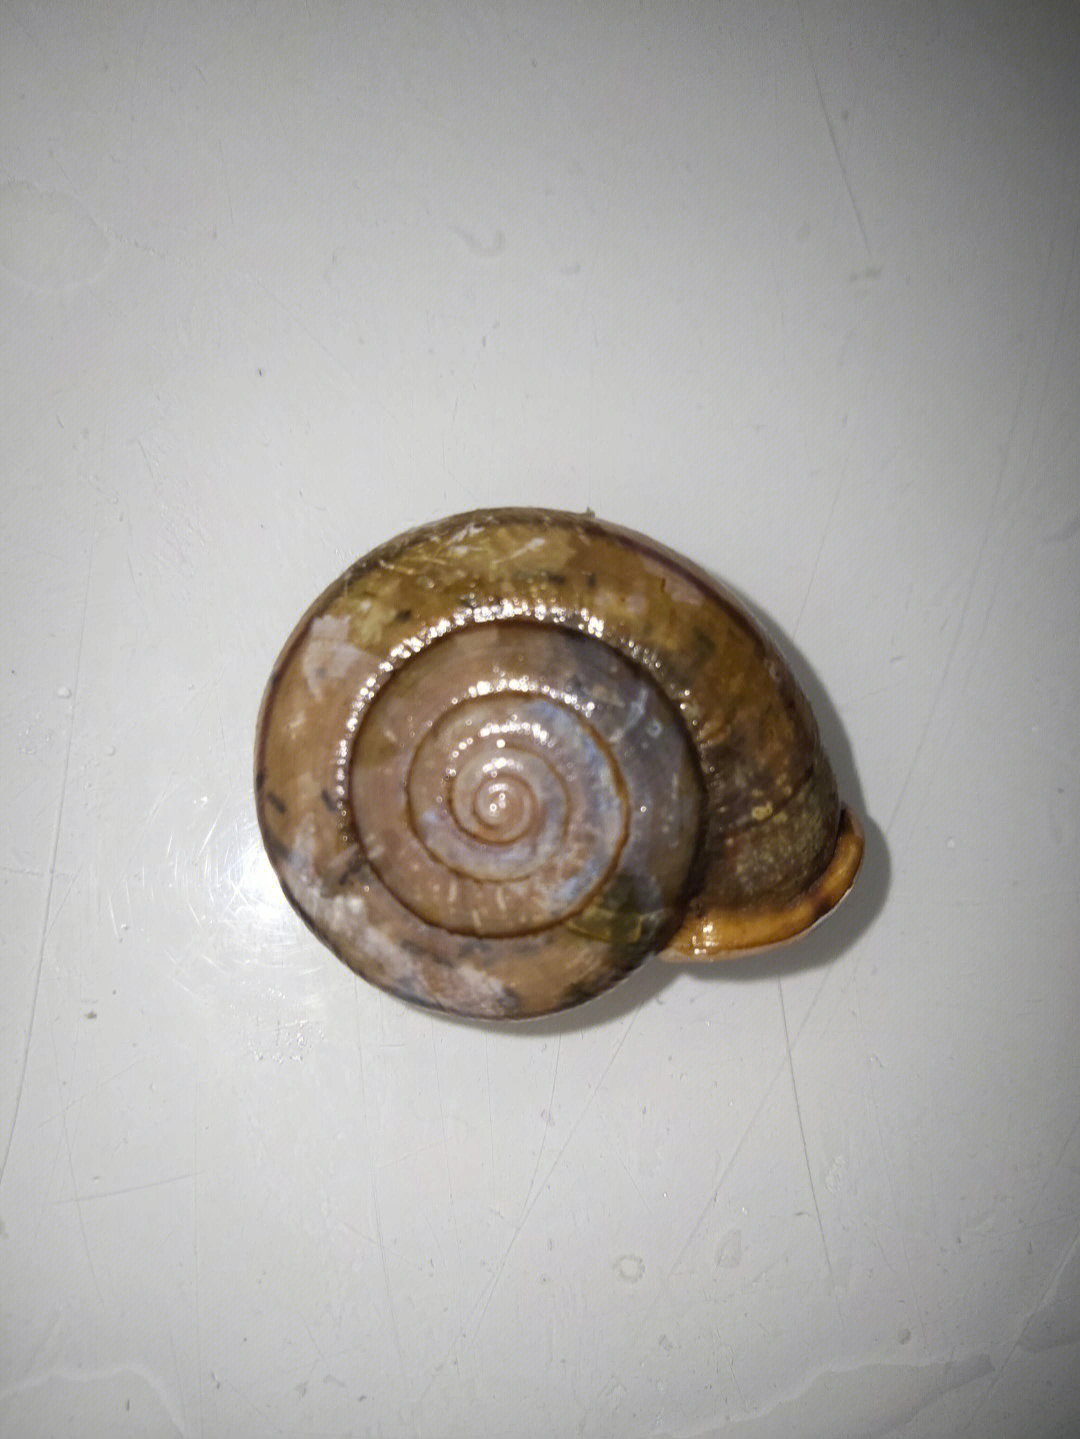 蜗牛壳内部结构图片